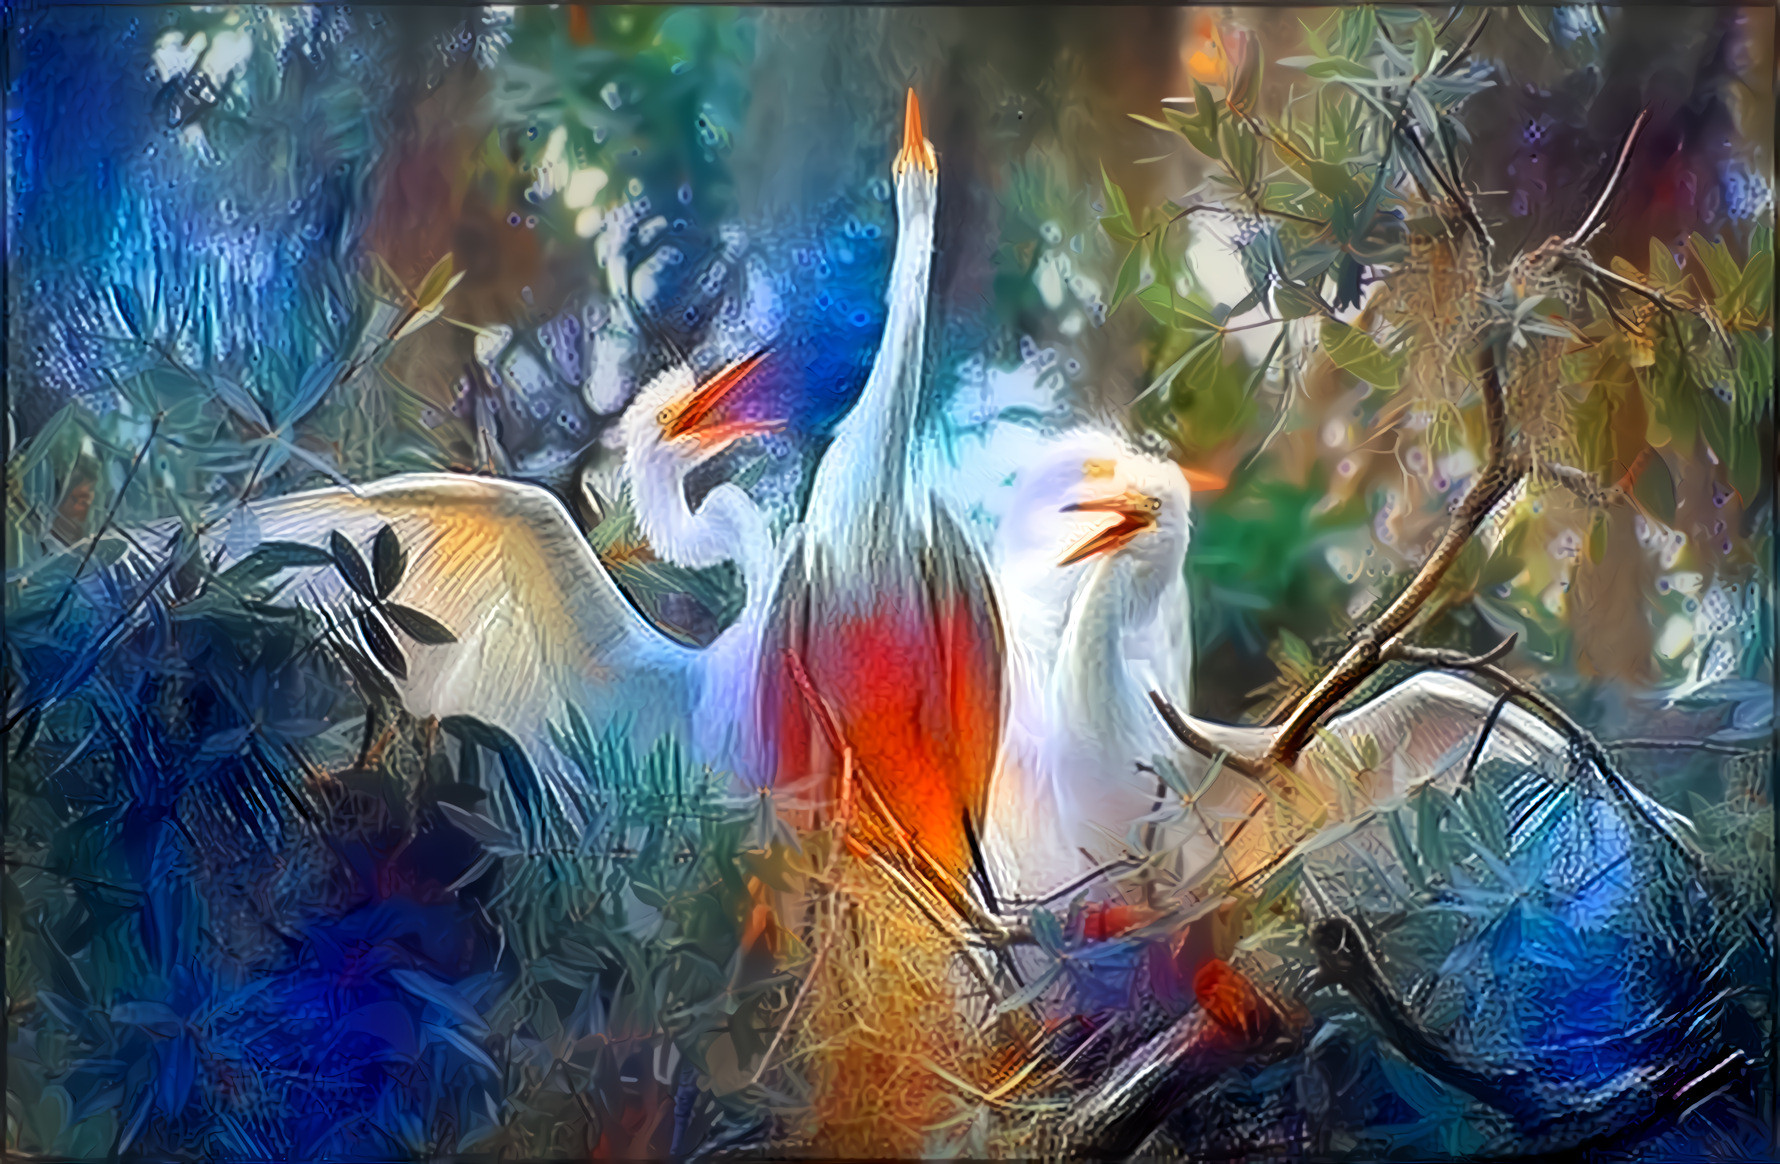 Nest of White Herons